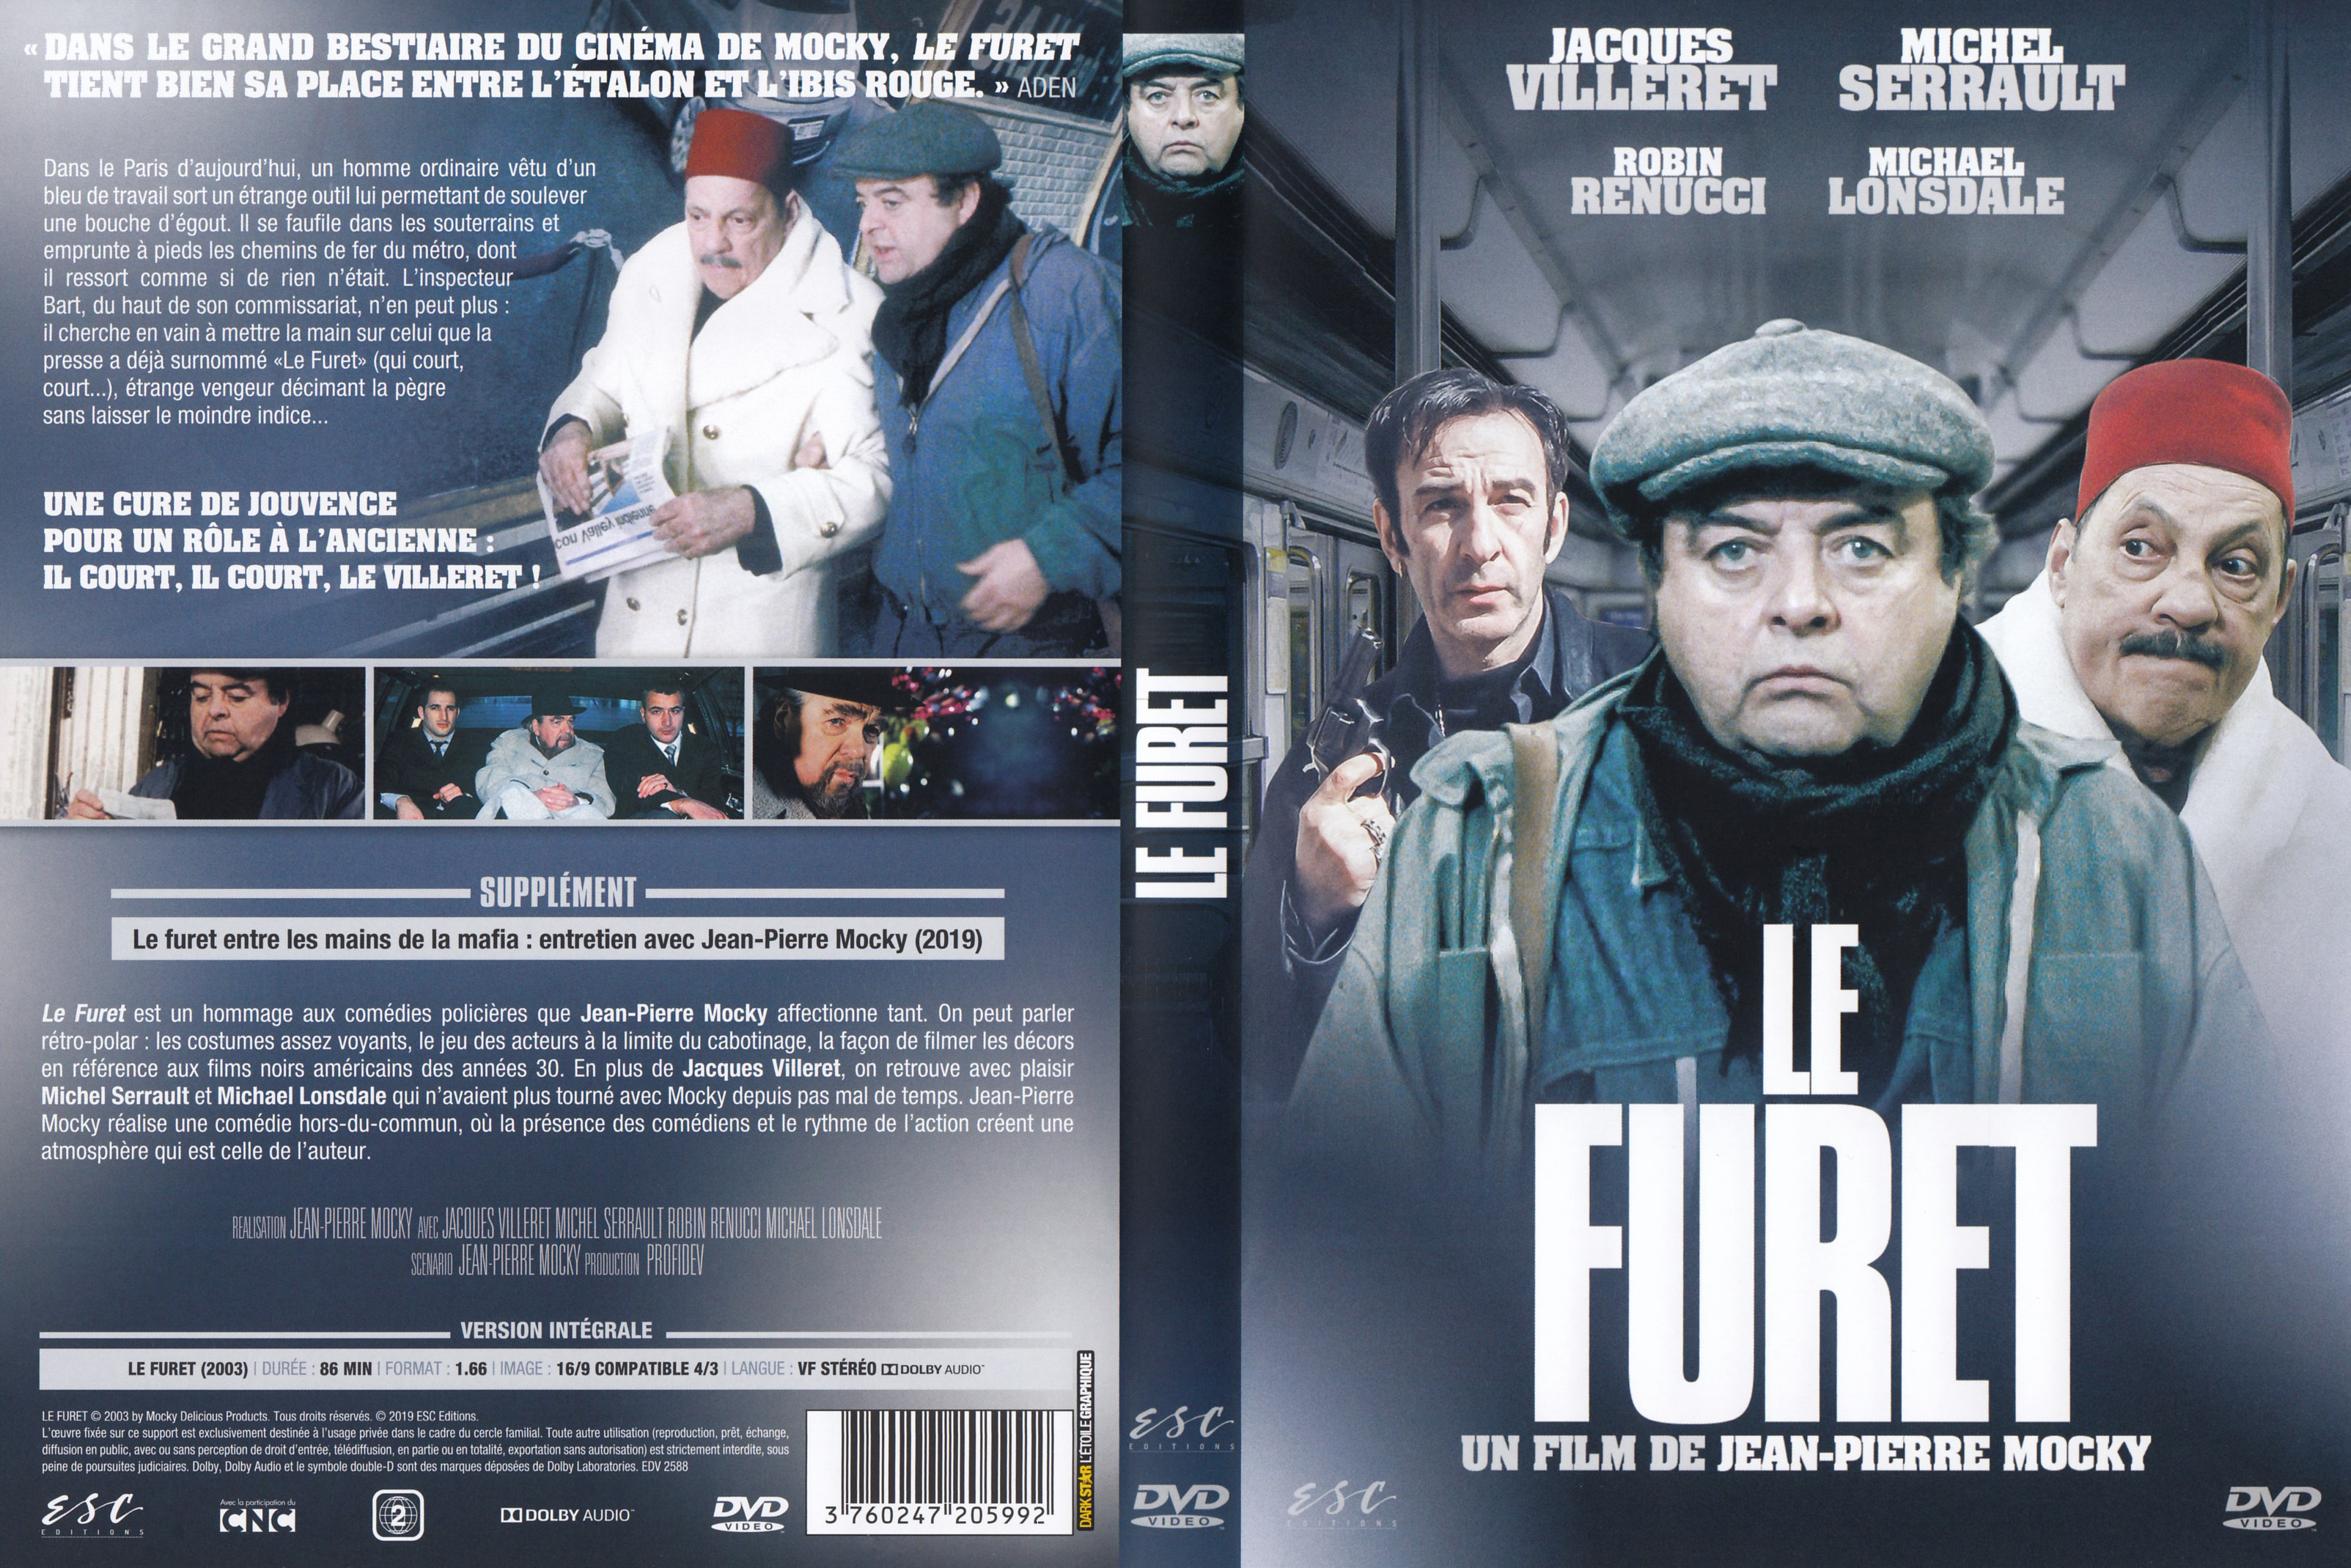 Jaquette DVD Le Furet v2